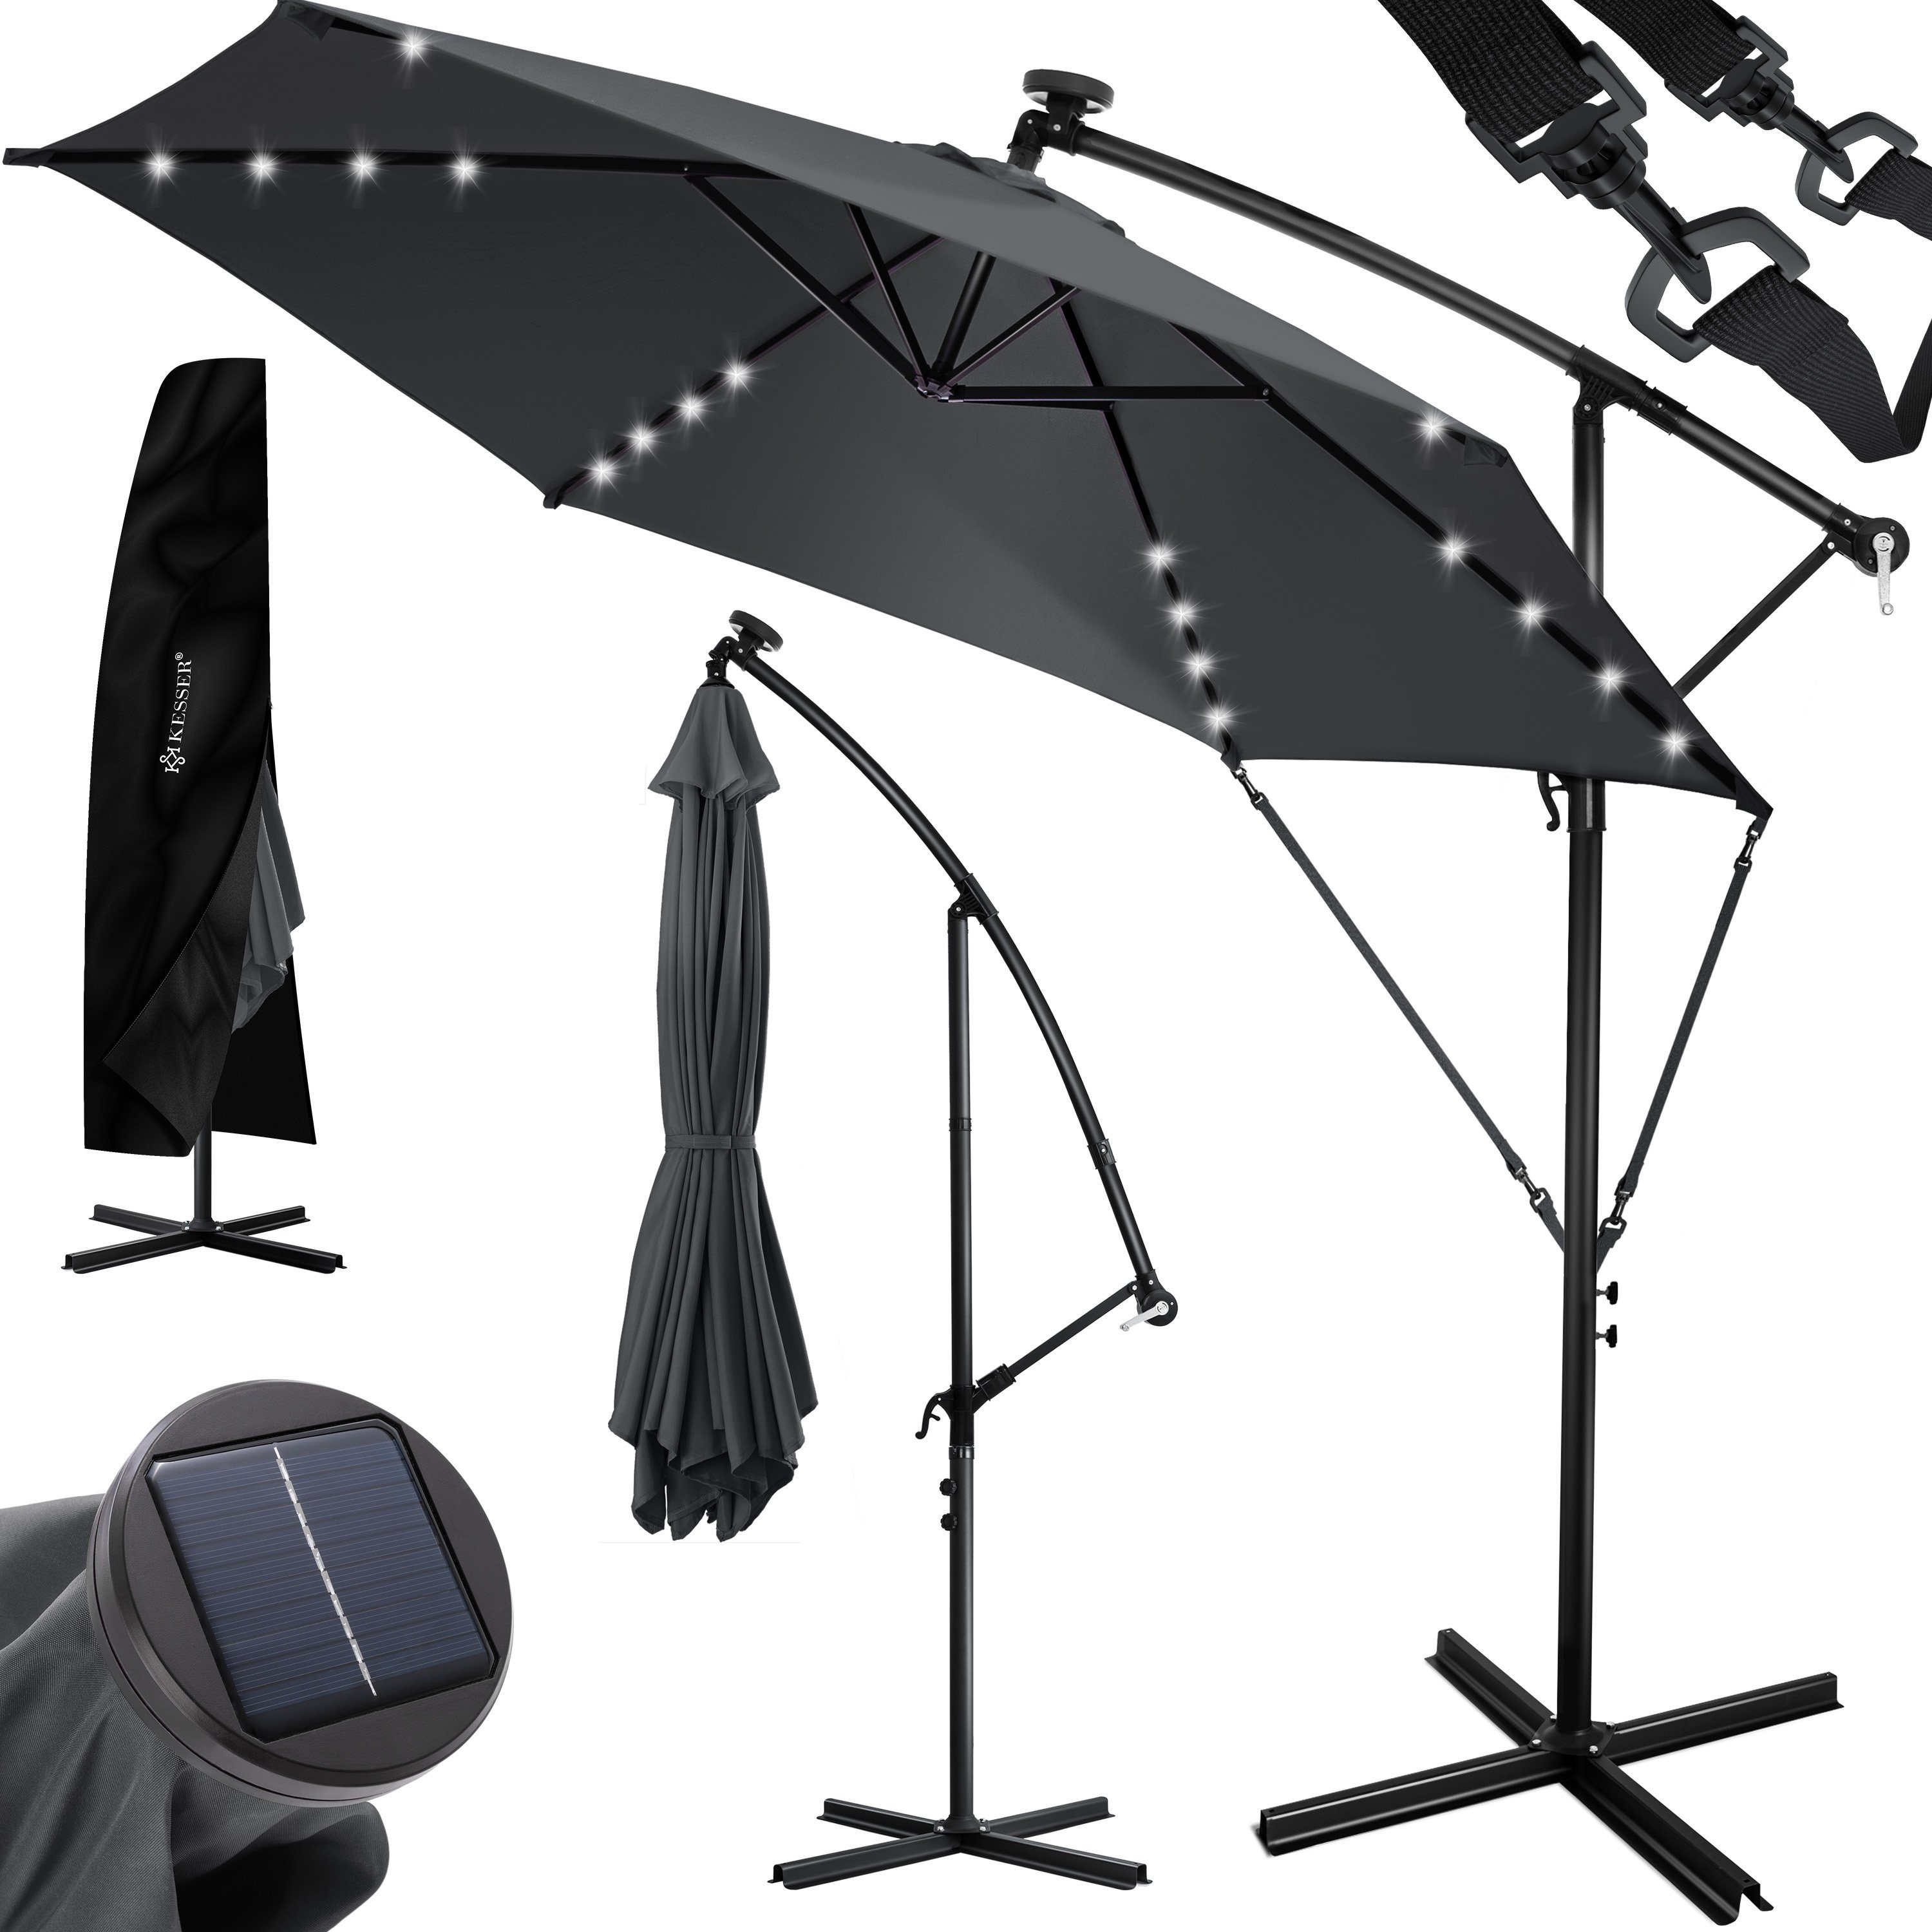 KESSER Ampelschirm, 3m+3,5m LED Sonnenschirm Ampelform Ø300cm-350cm mit  Abdeckung & Kurbelvorrichtung UV-Schutz Aluminium mit An- und Ausschalter  Wasserabweisend Schirm Garten Ampelschirm